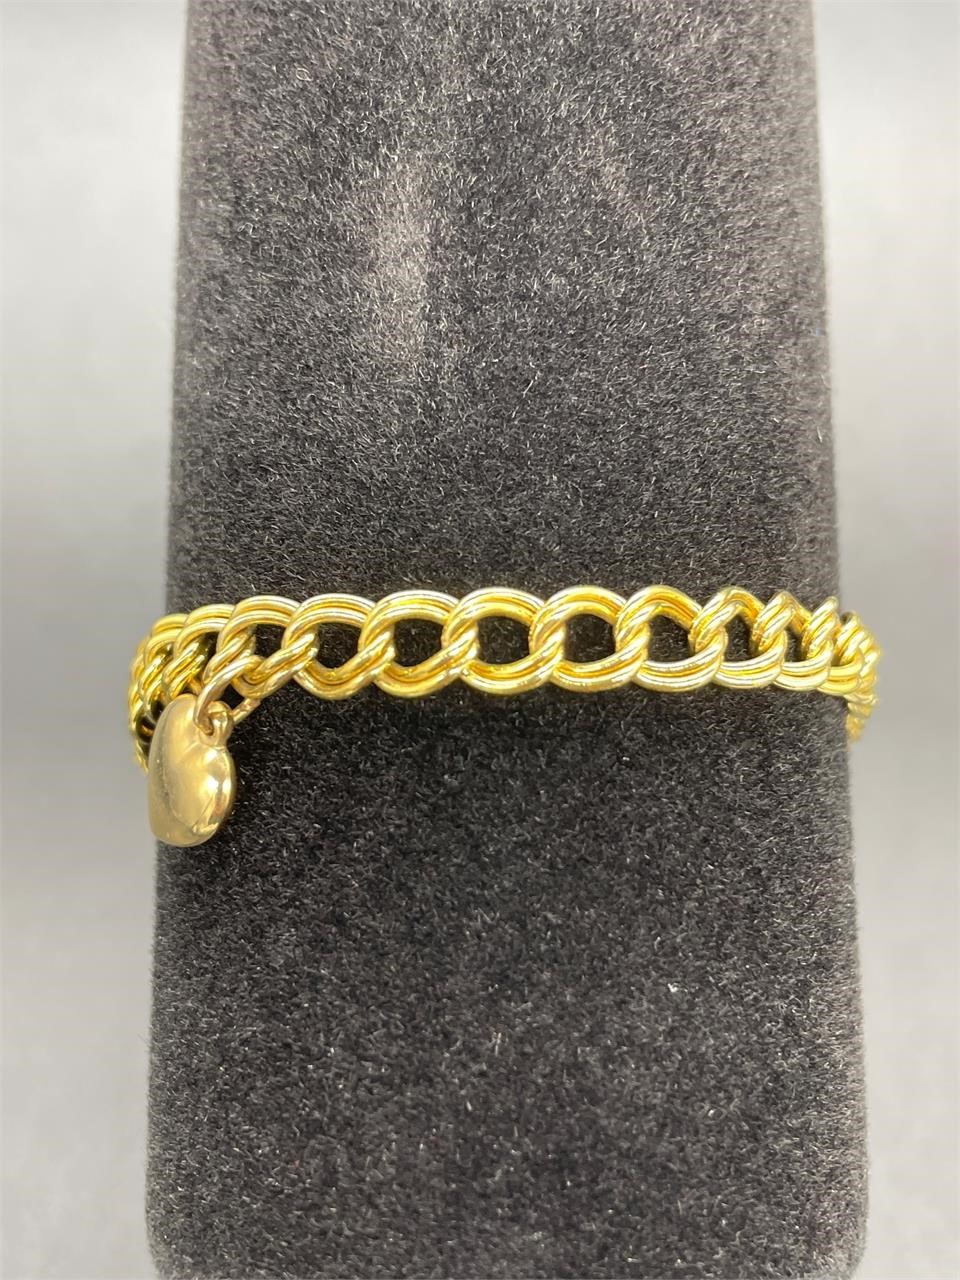 14k gold heart bracelet